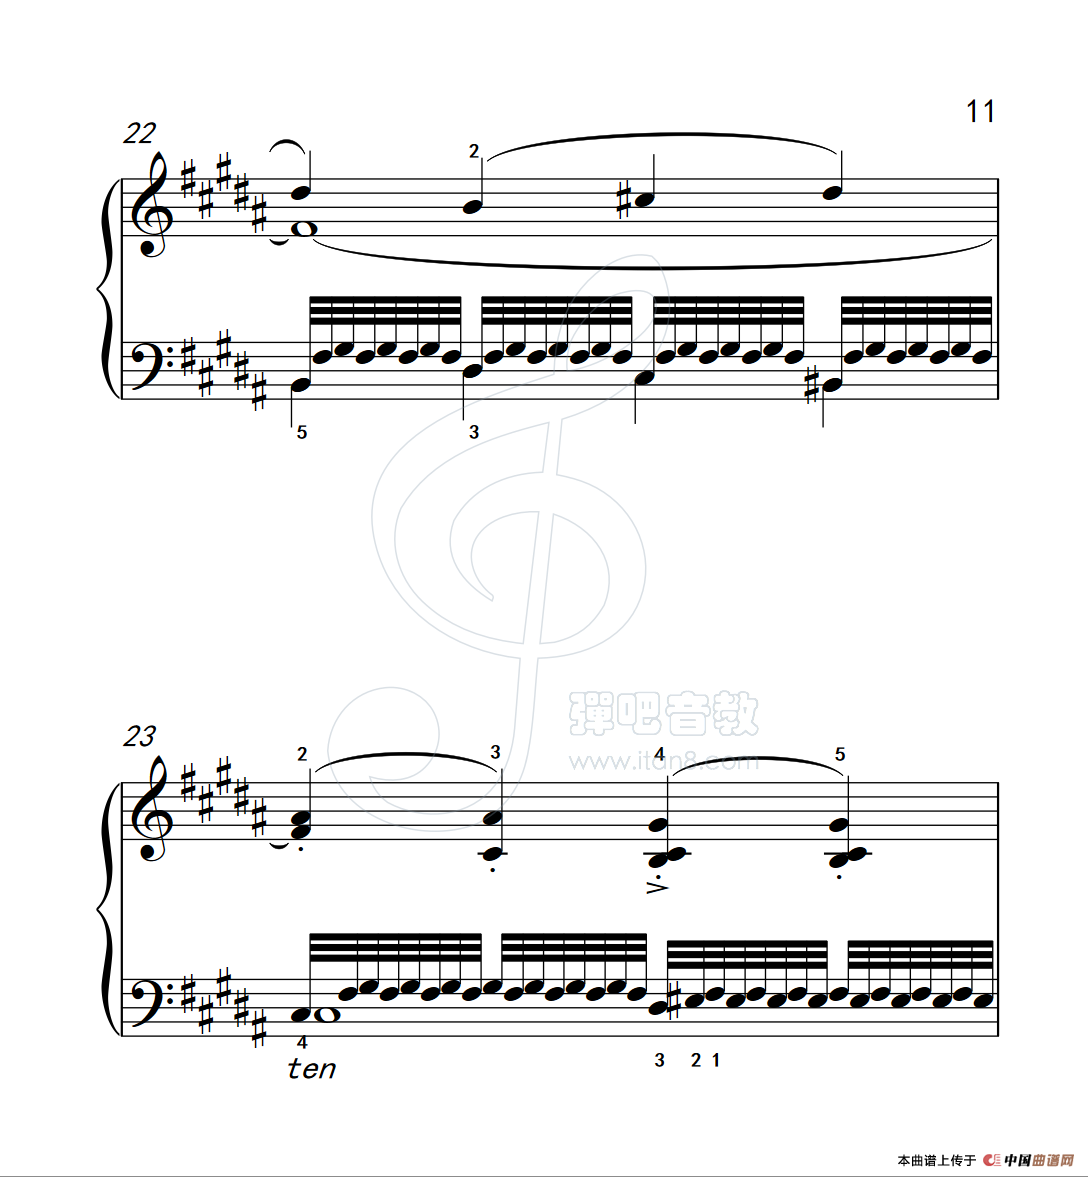 《练习曲 15》钢琴曲谱图分享